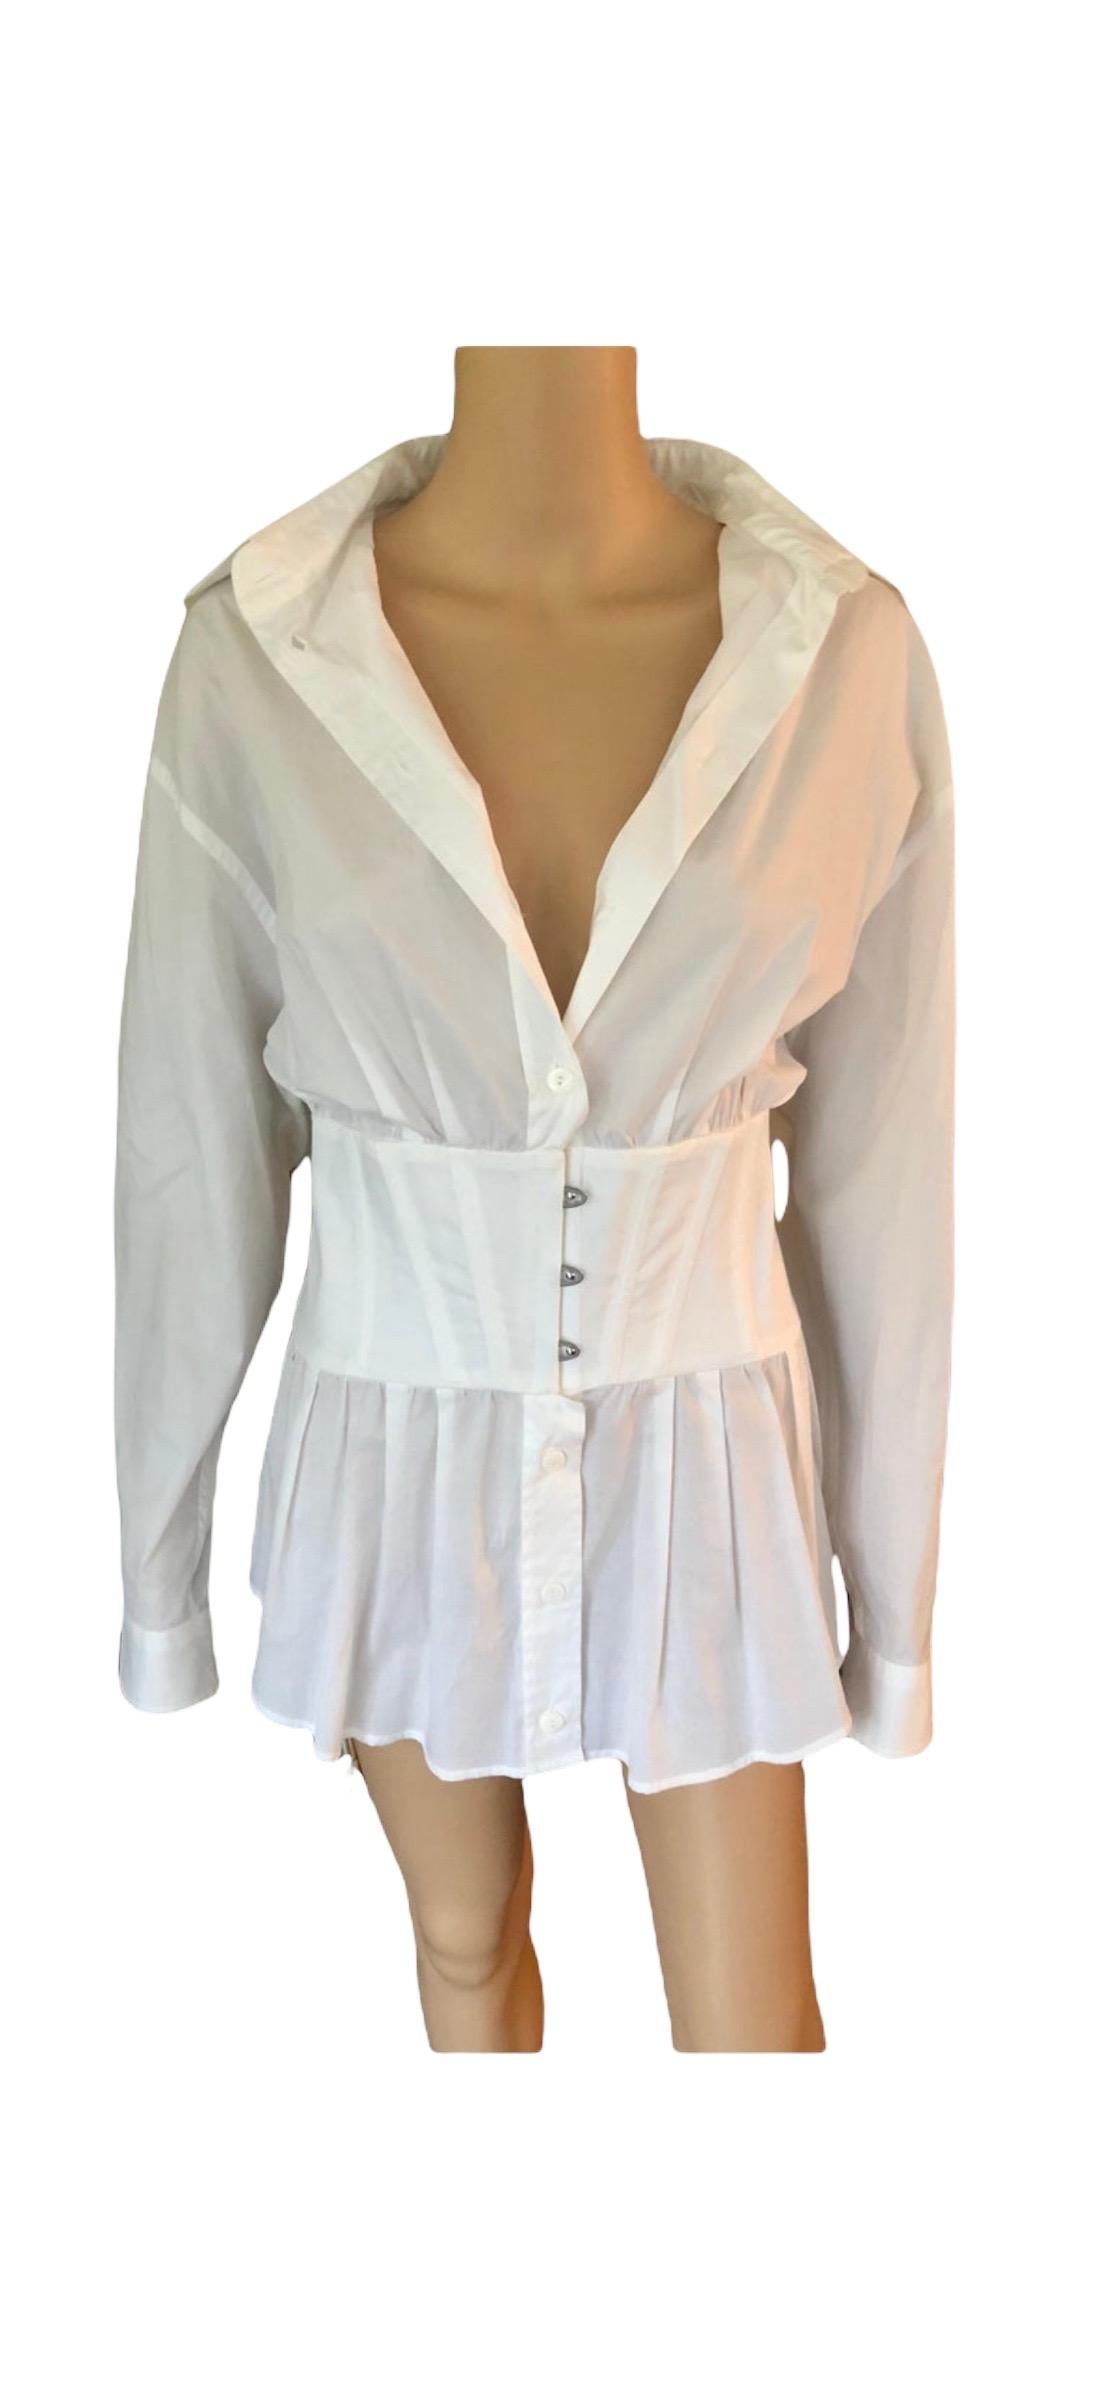 Women's Jean Paul Gaultier Vintage Corset White Shirt Dress For Sale